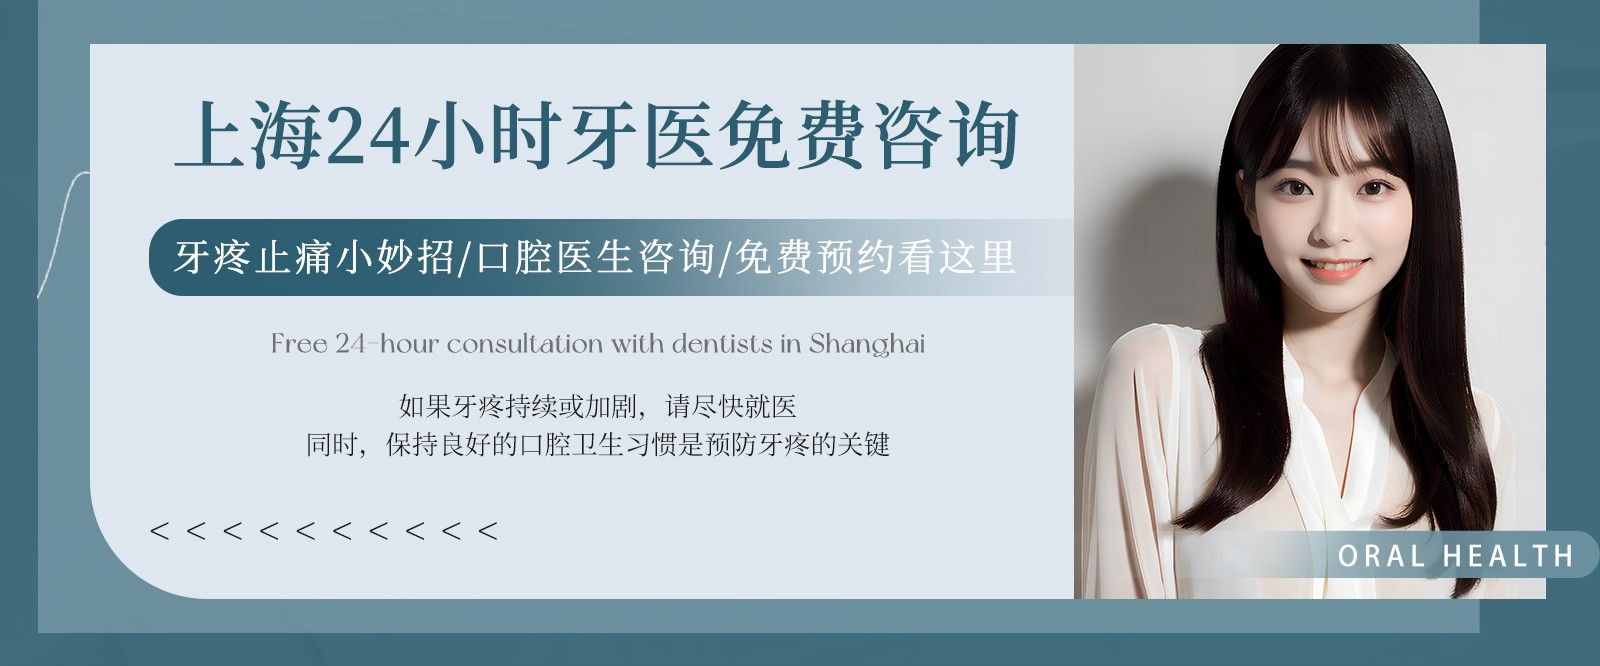 上海24小时牙医免费咨询:牙疼止痛小妙招/口腔医生咨询/免费预约看这里